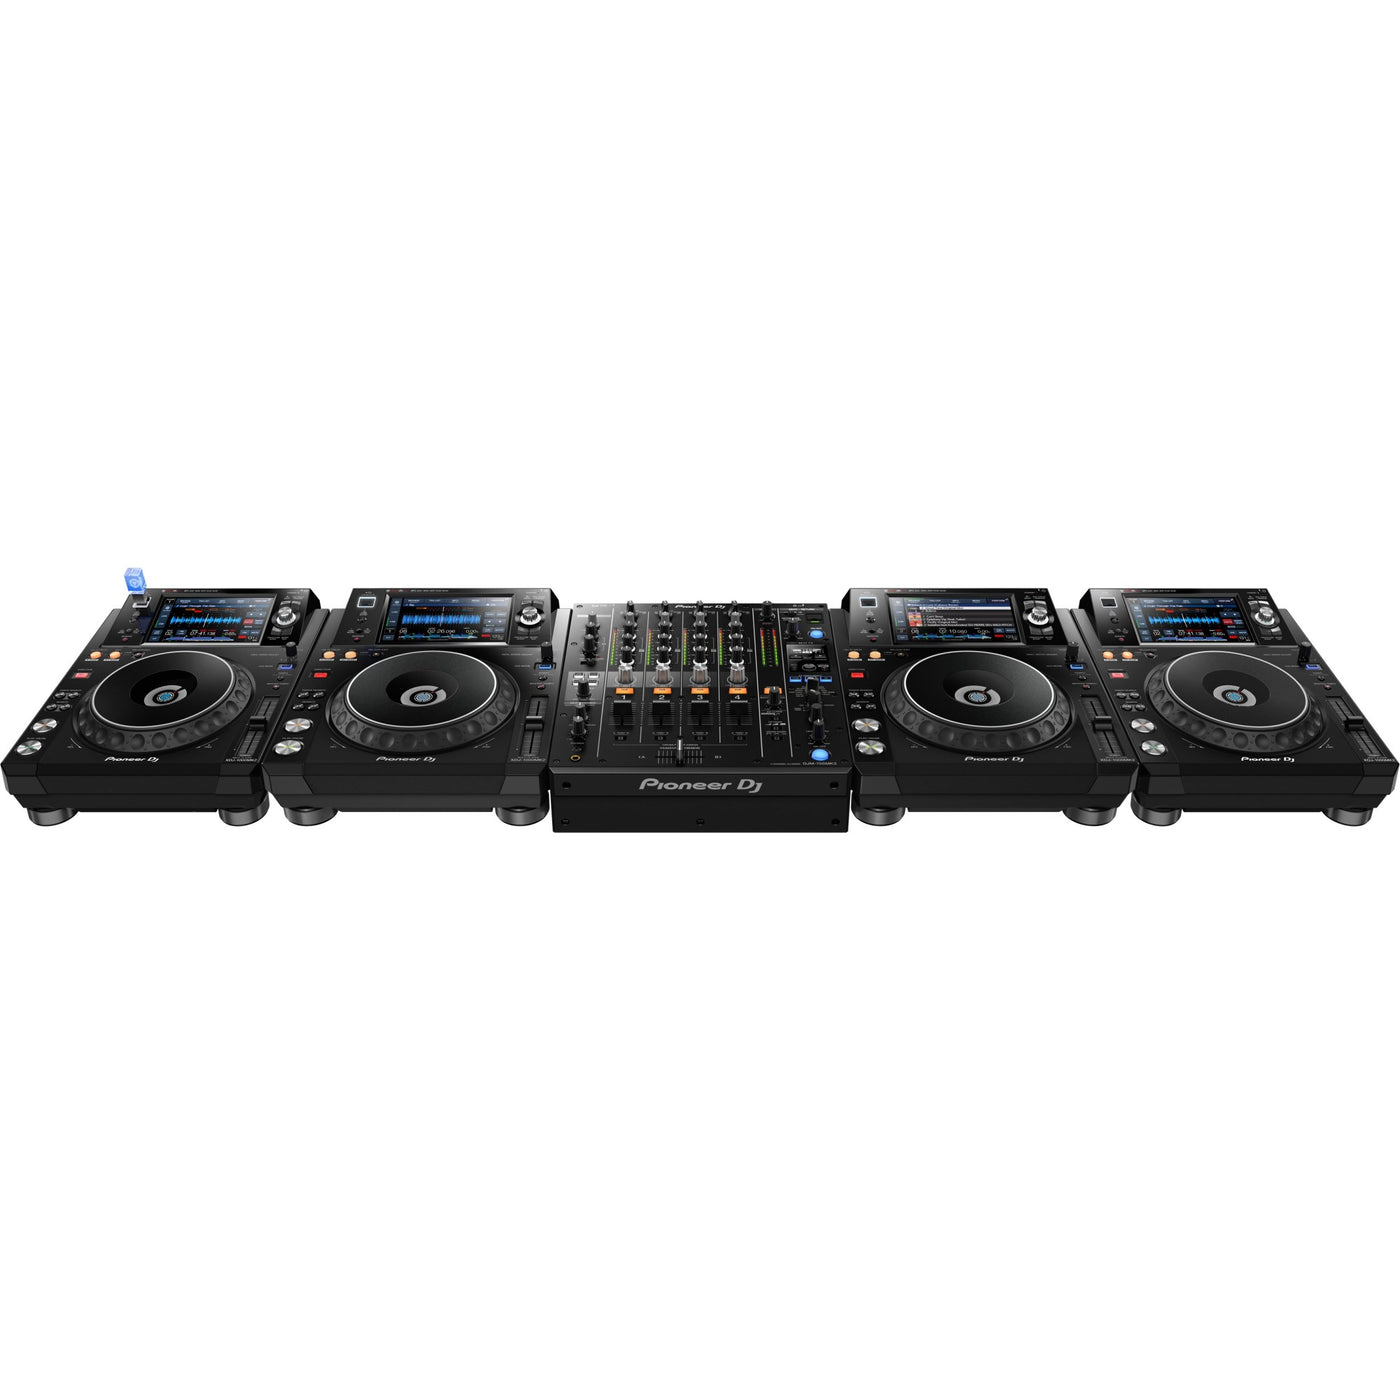 Pioneer DJ DJM-750MK2 4-Channel Performance DJ Mixer, Professional DJ Equipment Audio Switcher Interface